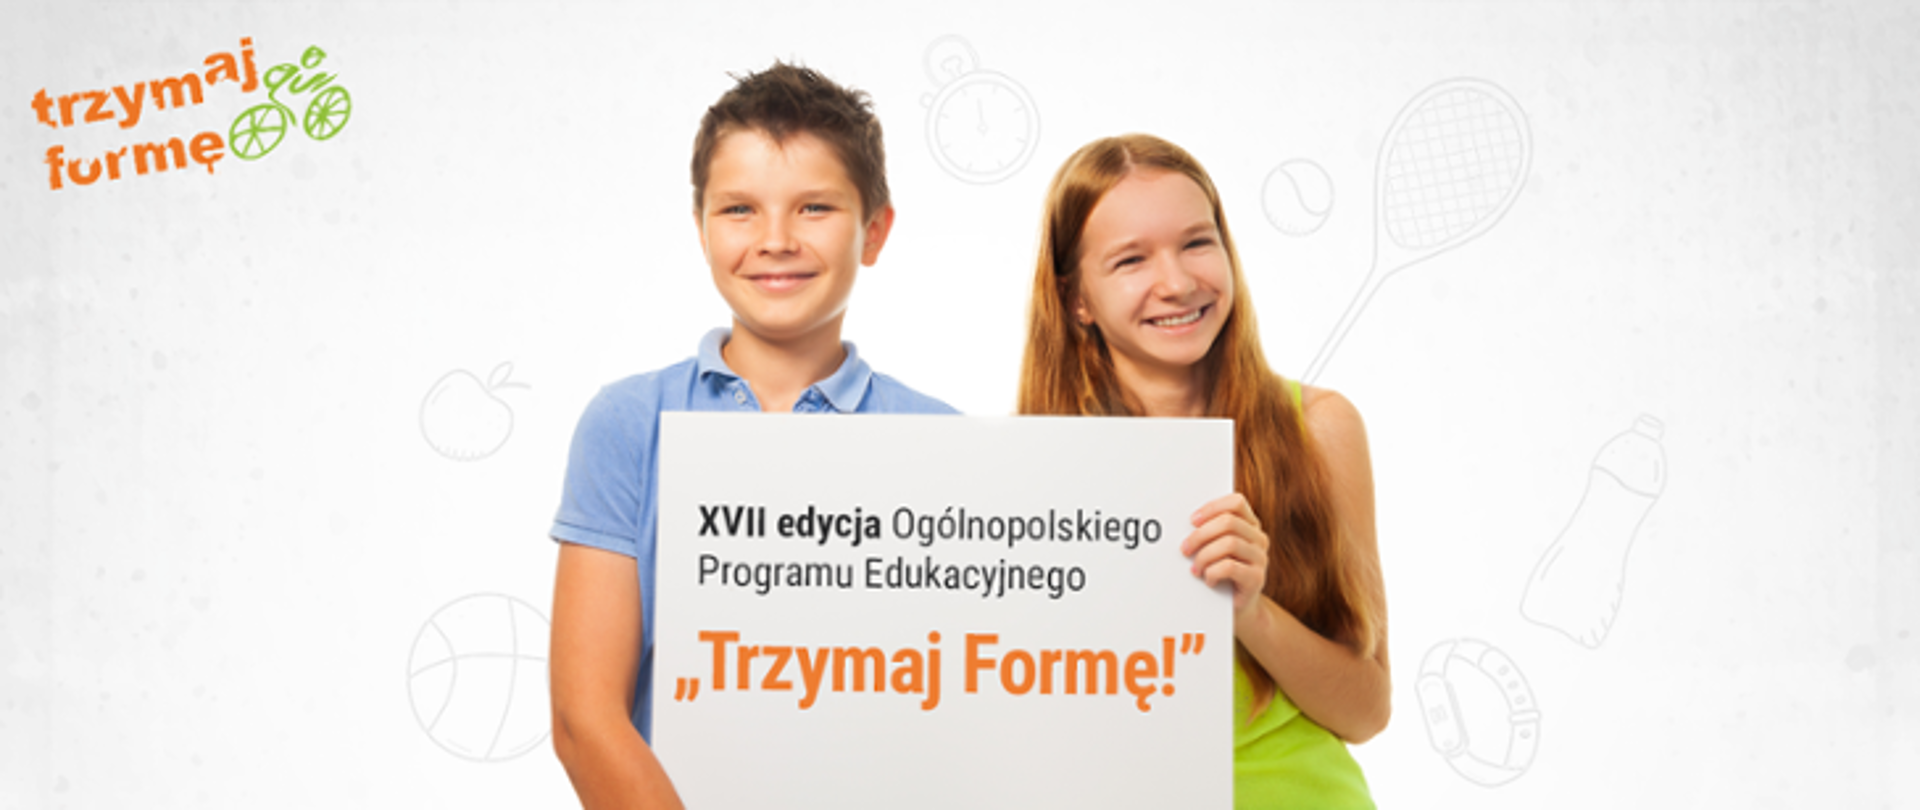 Plakat Ogólnopolskiego Programu Edukacyjnego "Trzymaj Formę" XVII Edycja